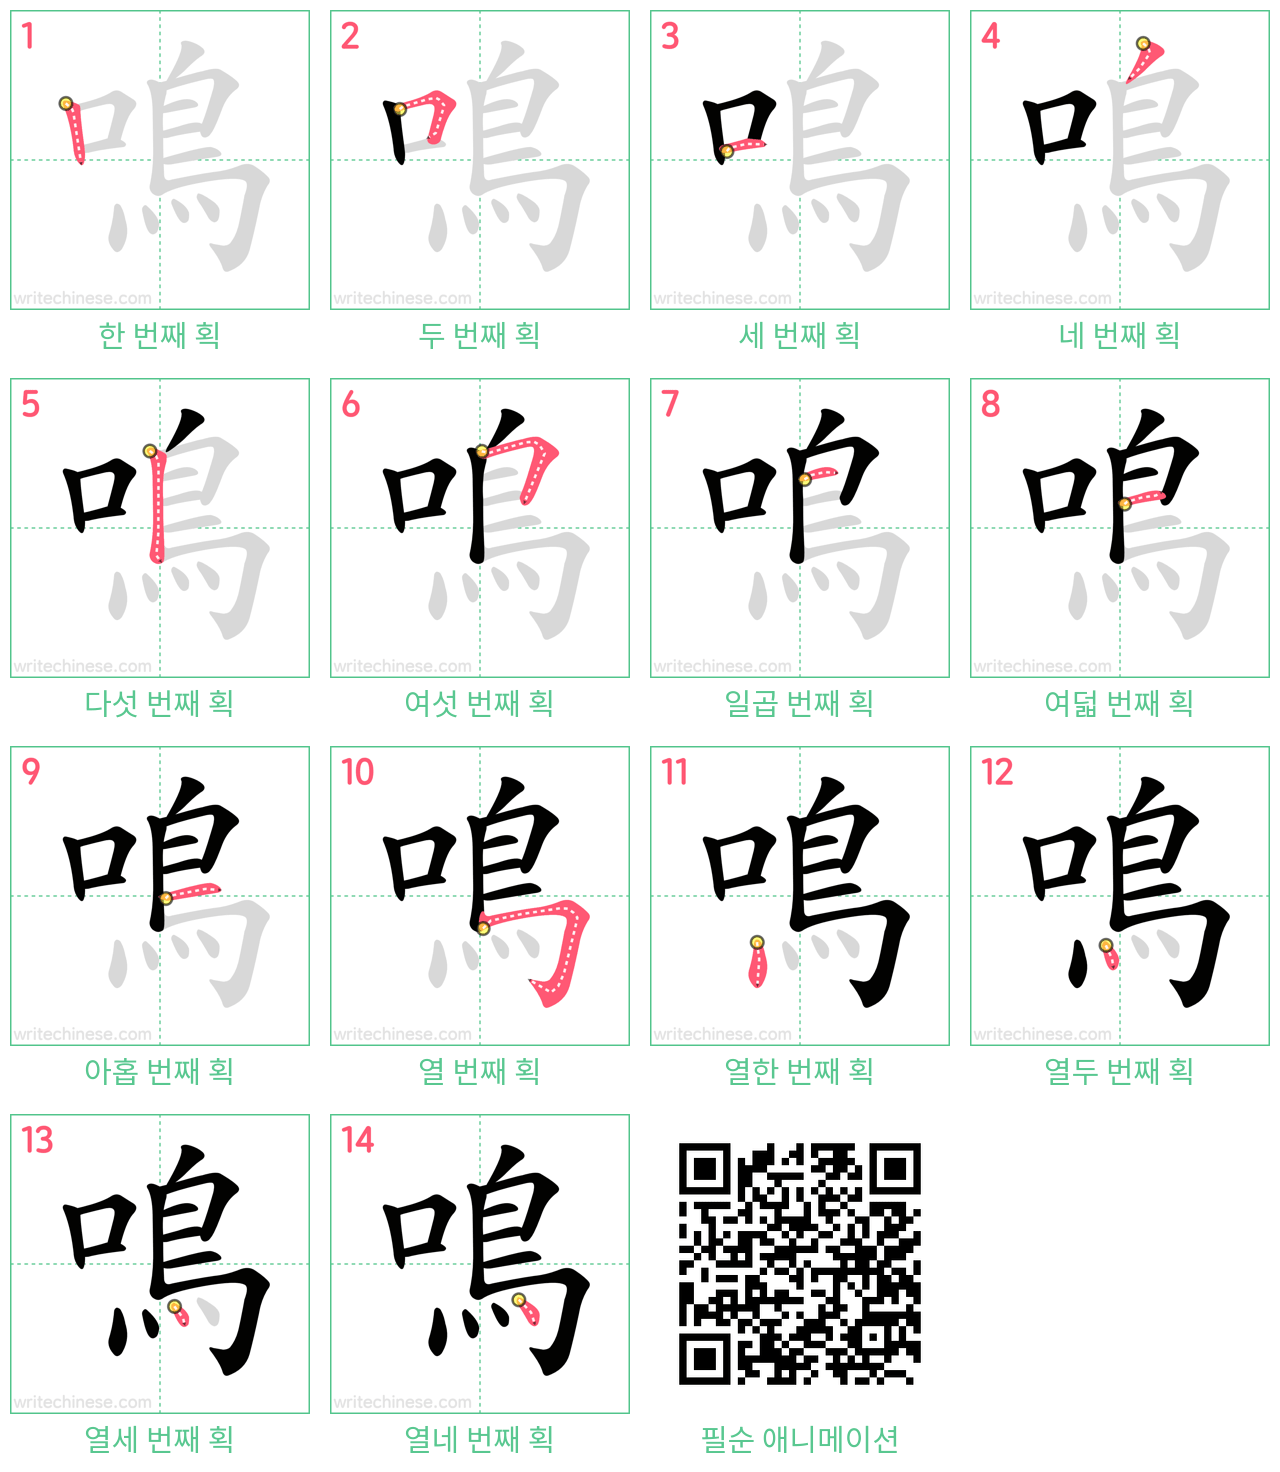 鳴 step-by-step stroke order diagrams